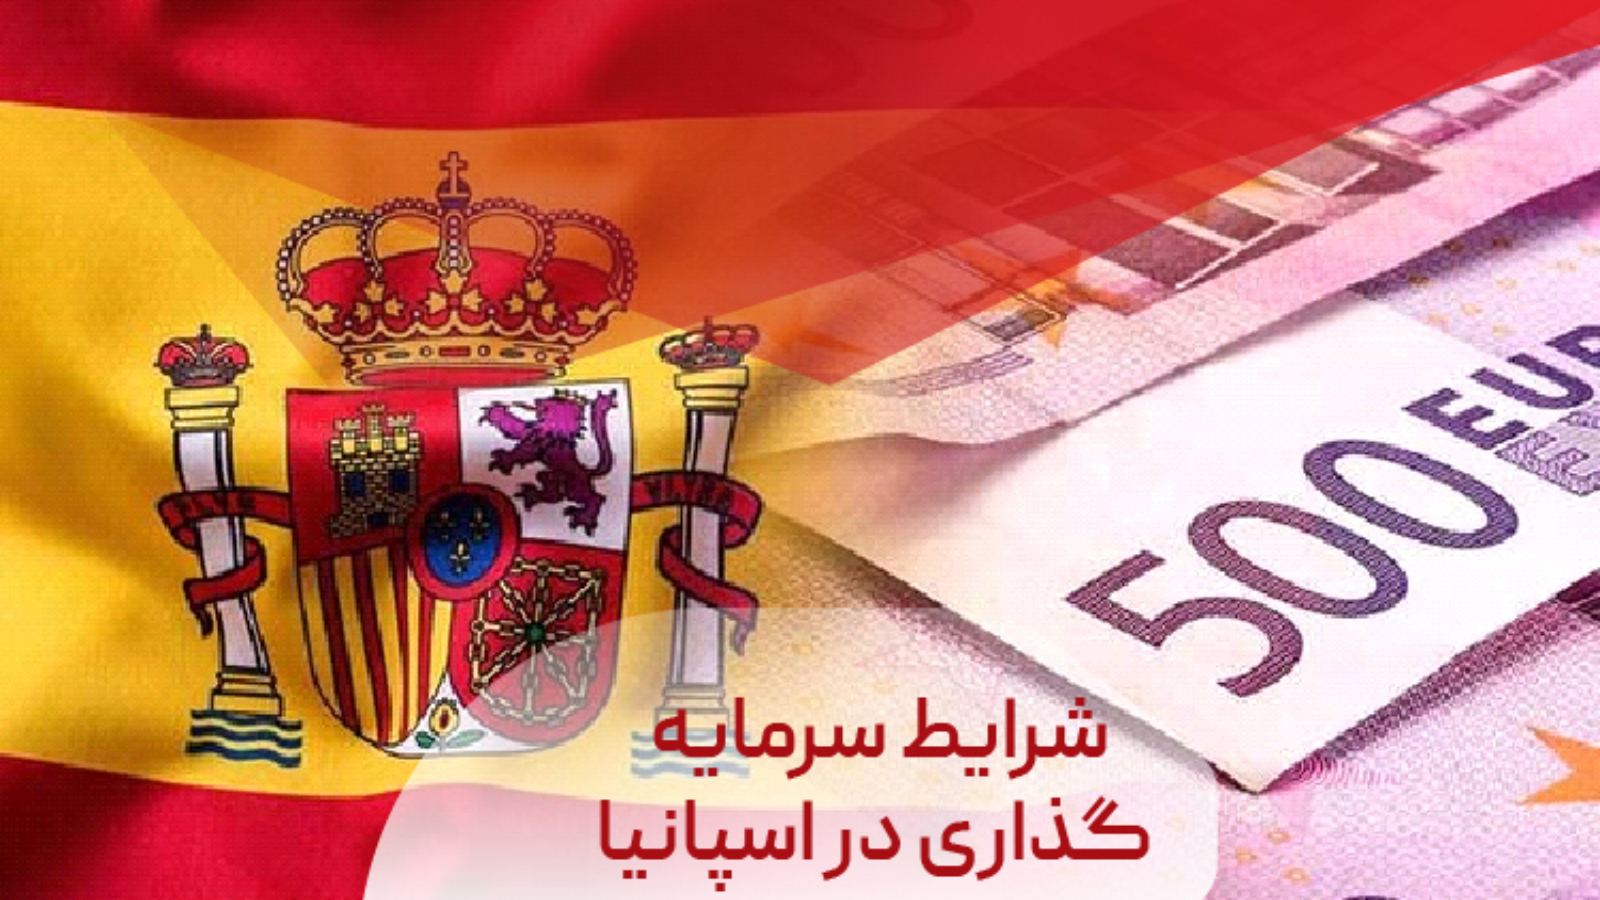 شرایط سرمایه گذاری در اسپانیا